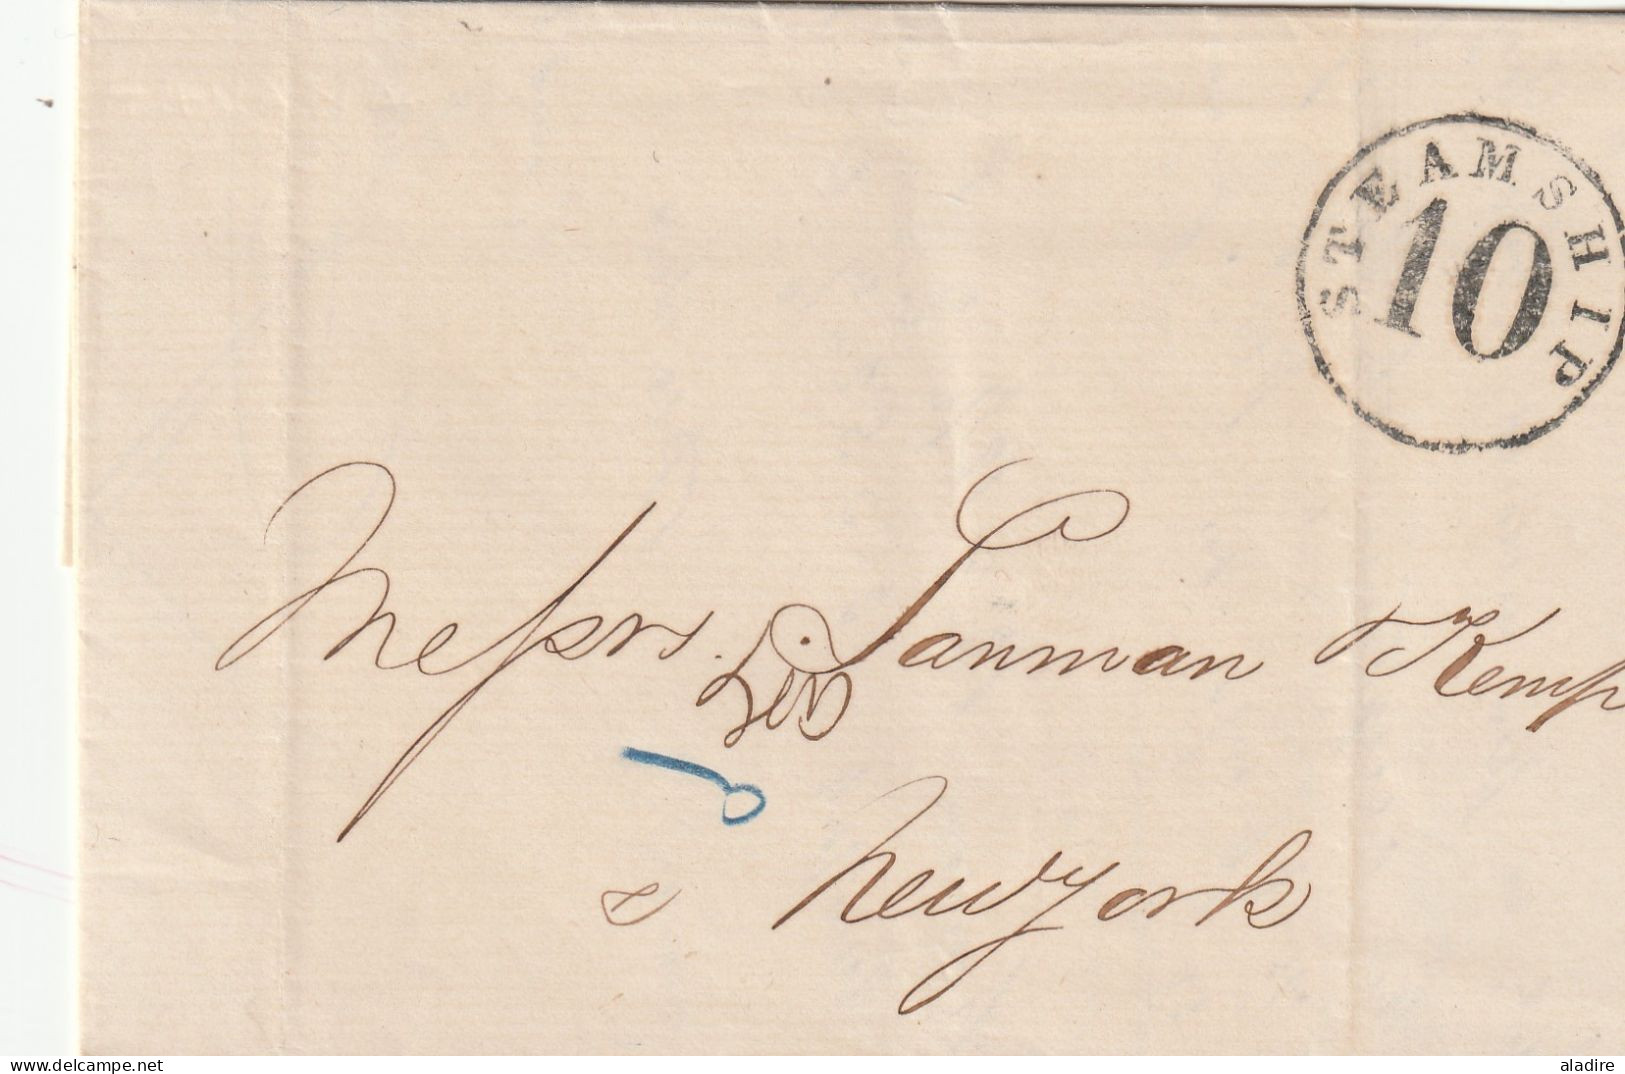 CUBA MARITIME 1820 - 1865 - lot de 5 lettres : Colonies Art.13, Steamship, Outremer par le Havre, Colonies par Bordeaux